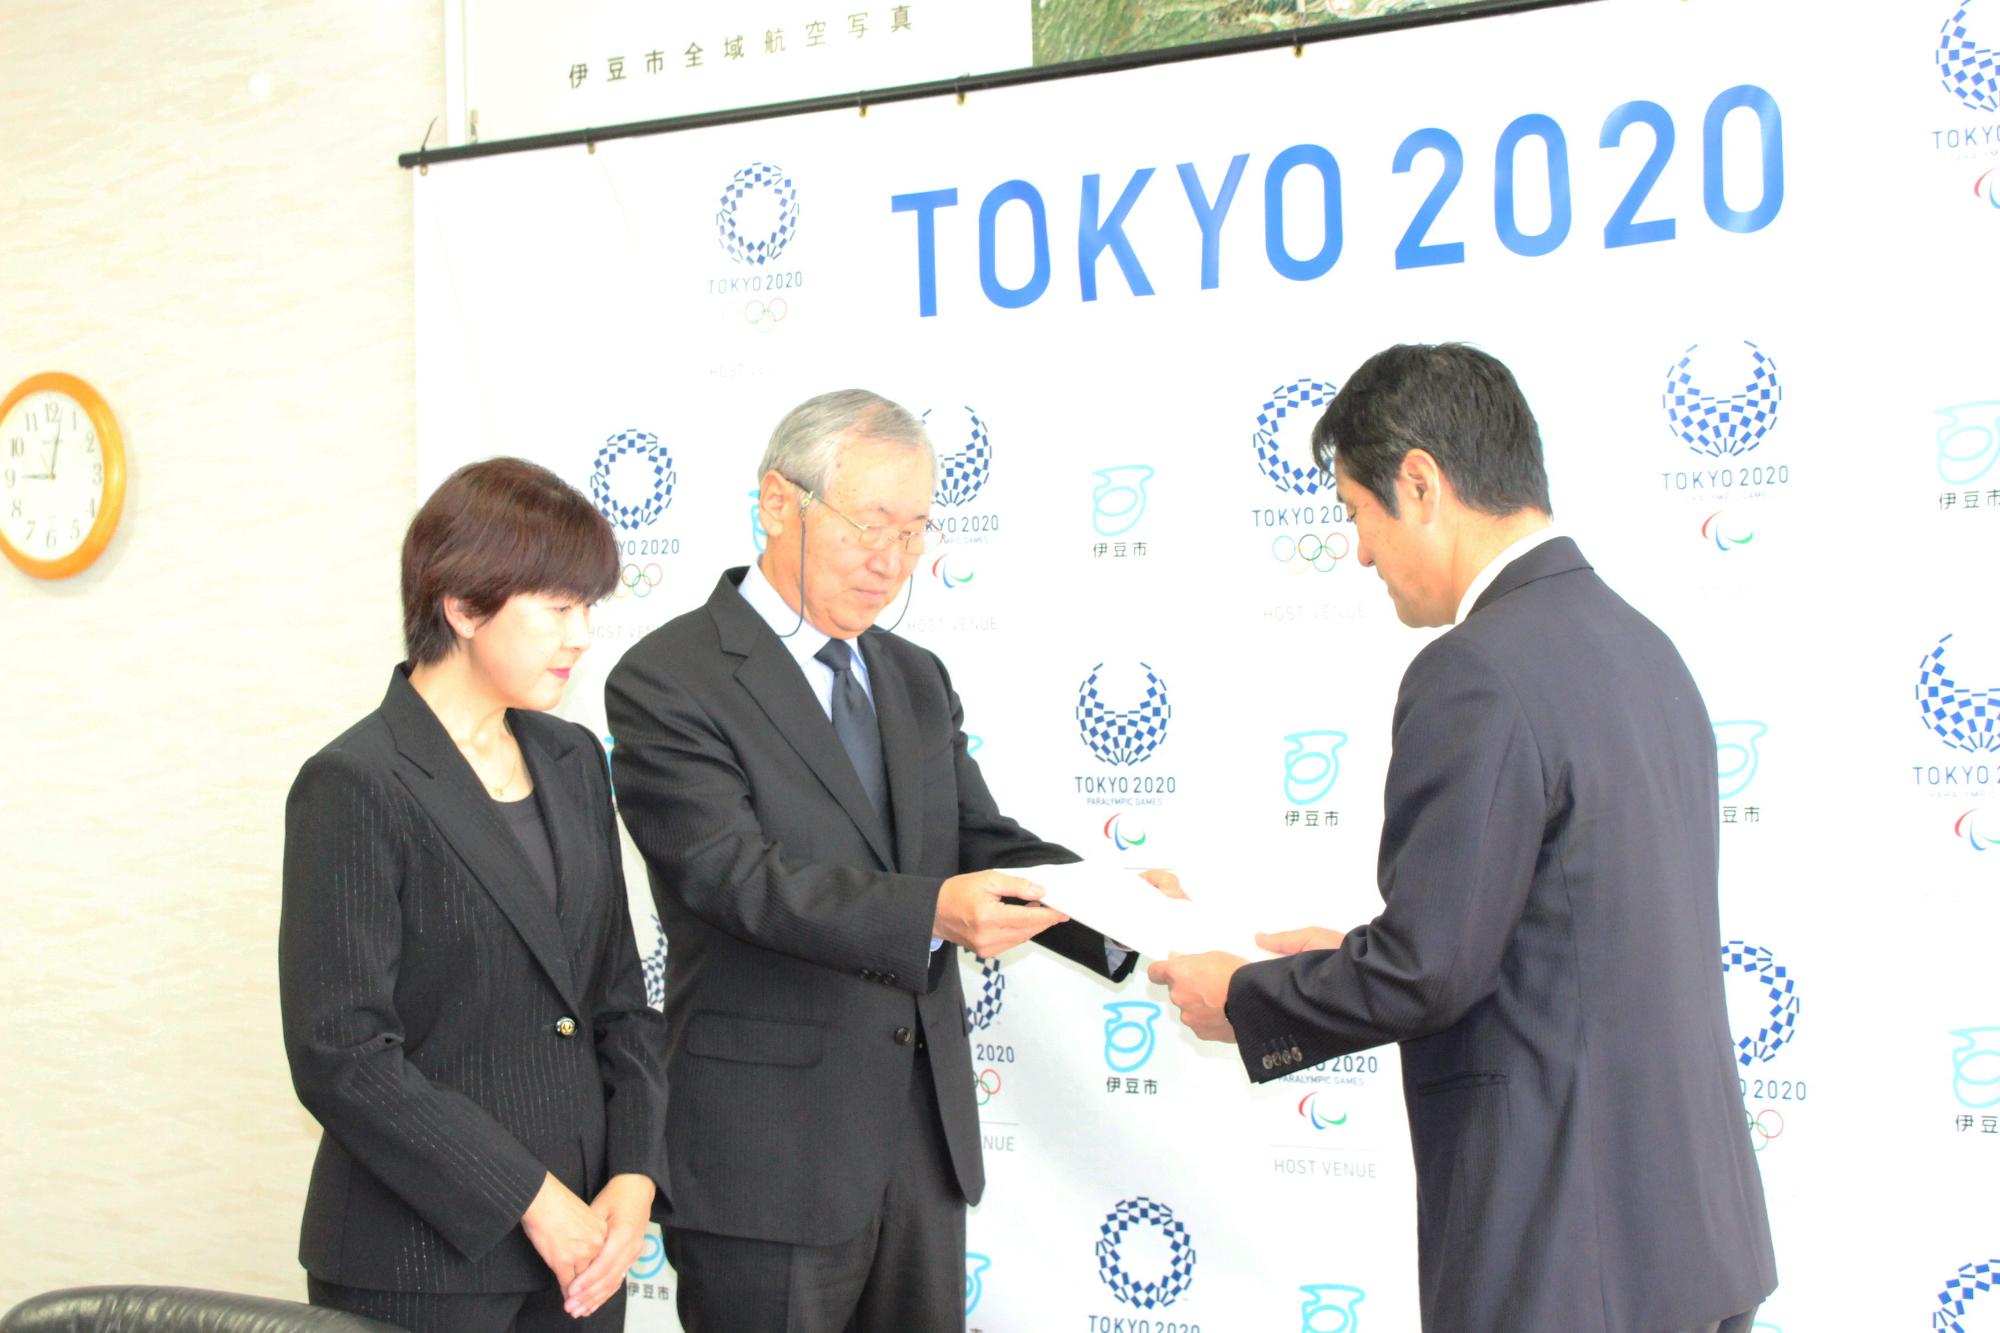 TOKYO2020の会見パネルの前で遠藤会長と植松副会長が並んで立ち、遠藤会長が市長に答申書を渡している様子の写真